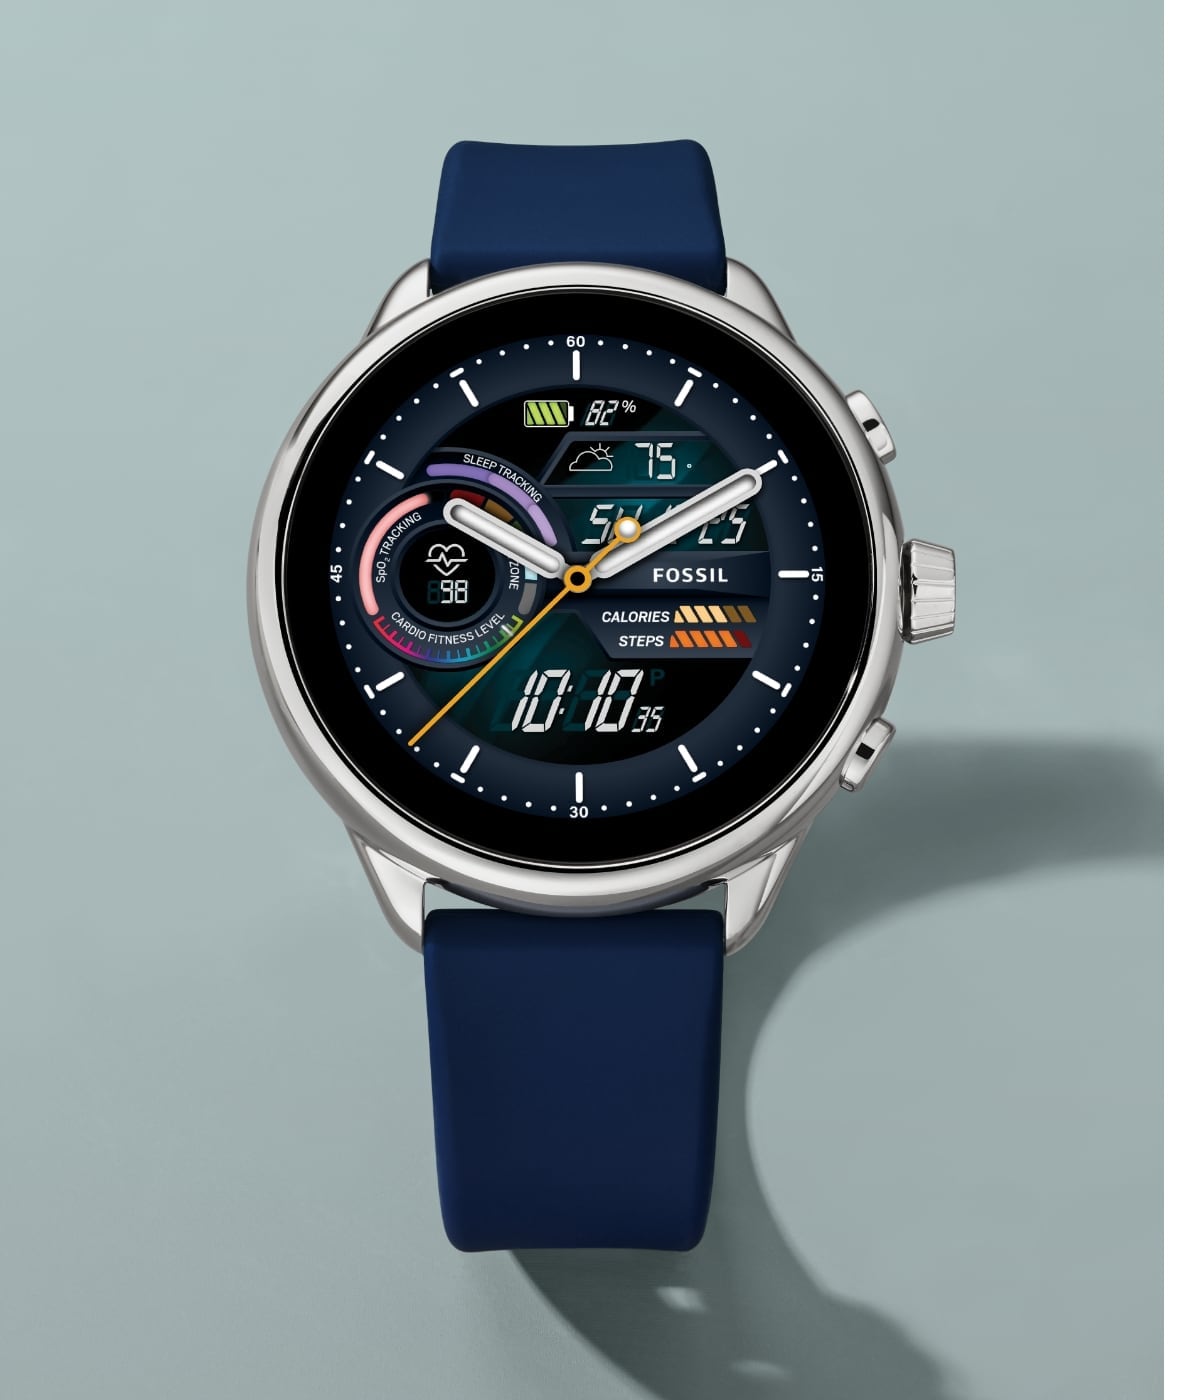 Une montre connectée hybride Gen 6 édition Wellness en silicone bleu.